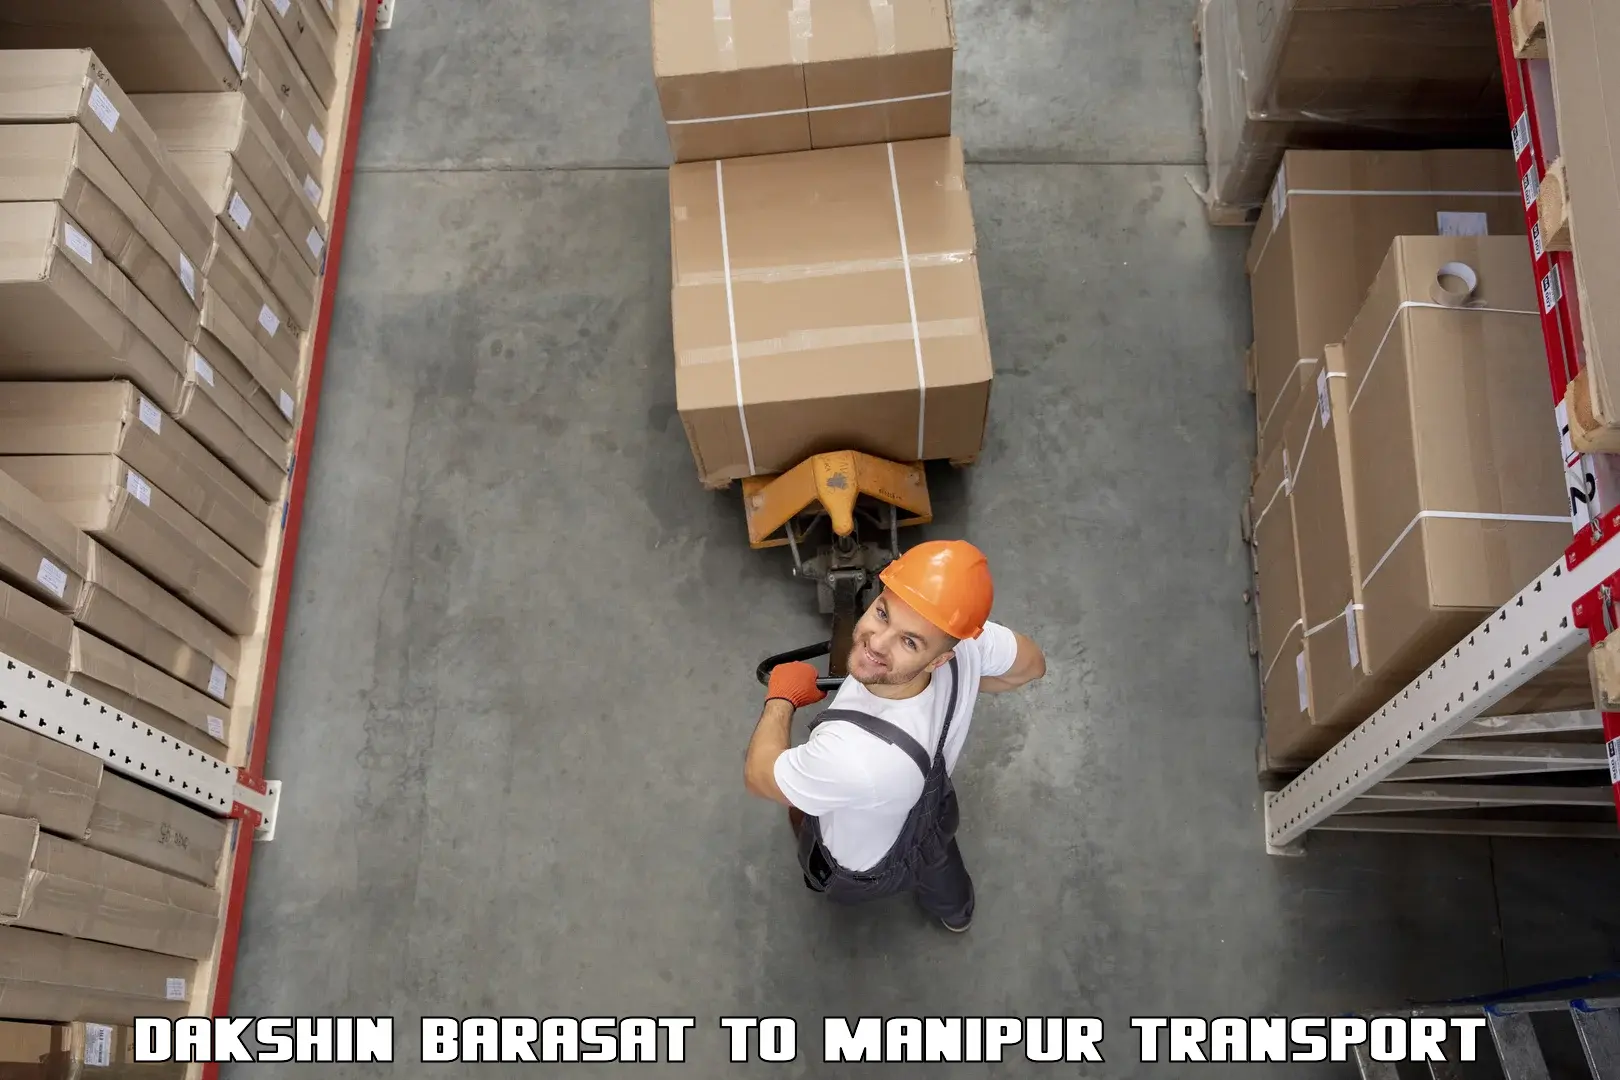 Part load transport service in India Dakshin Barasat to Churachandpur